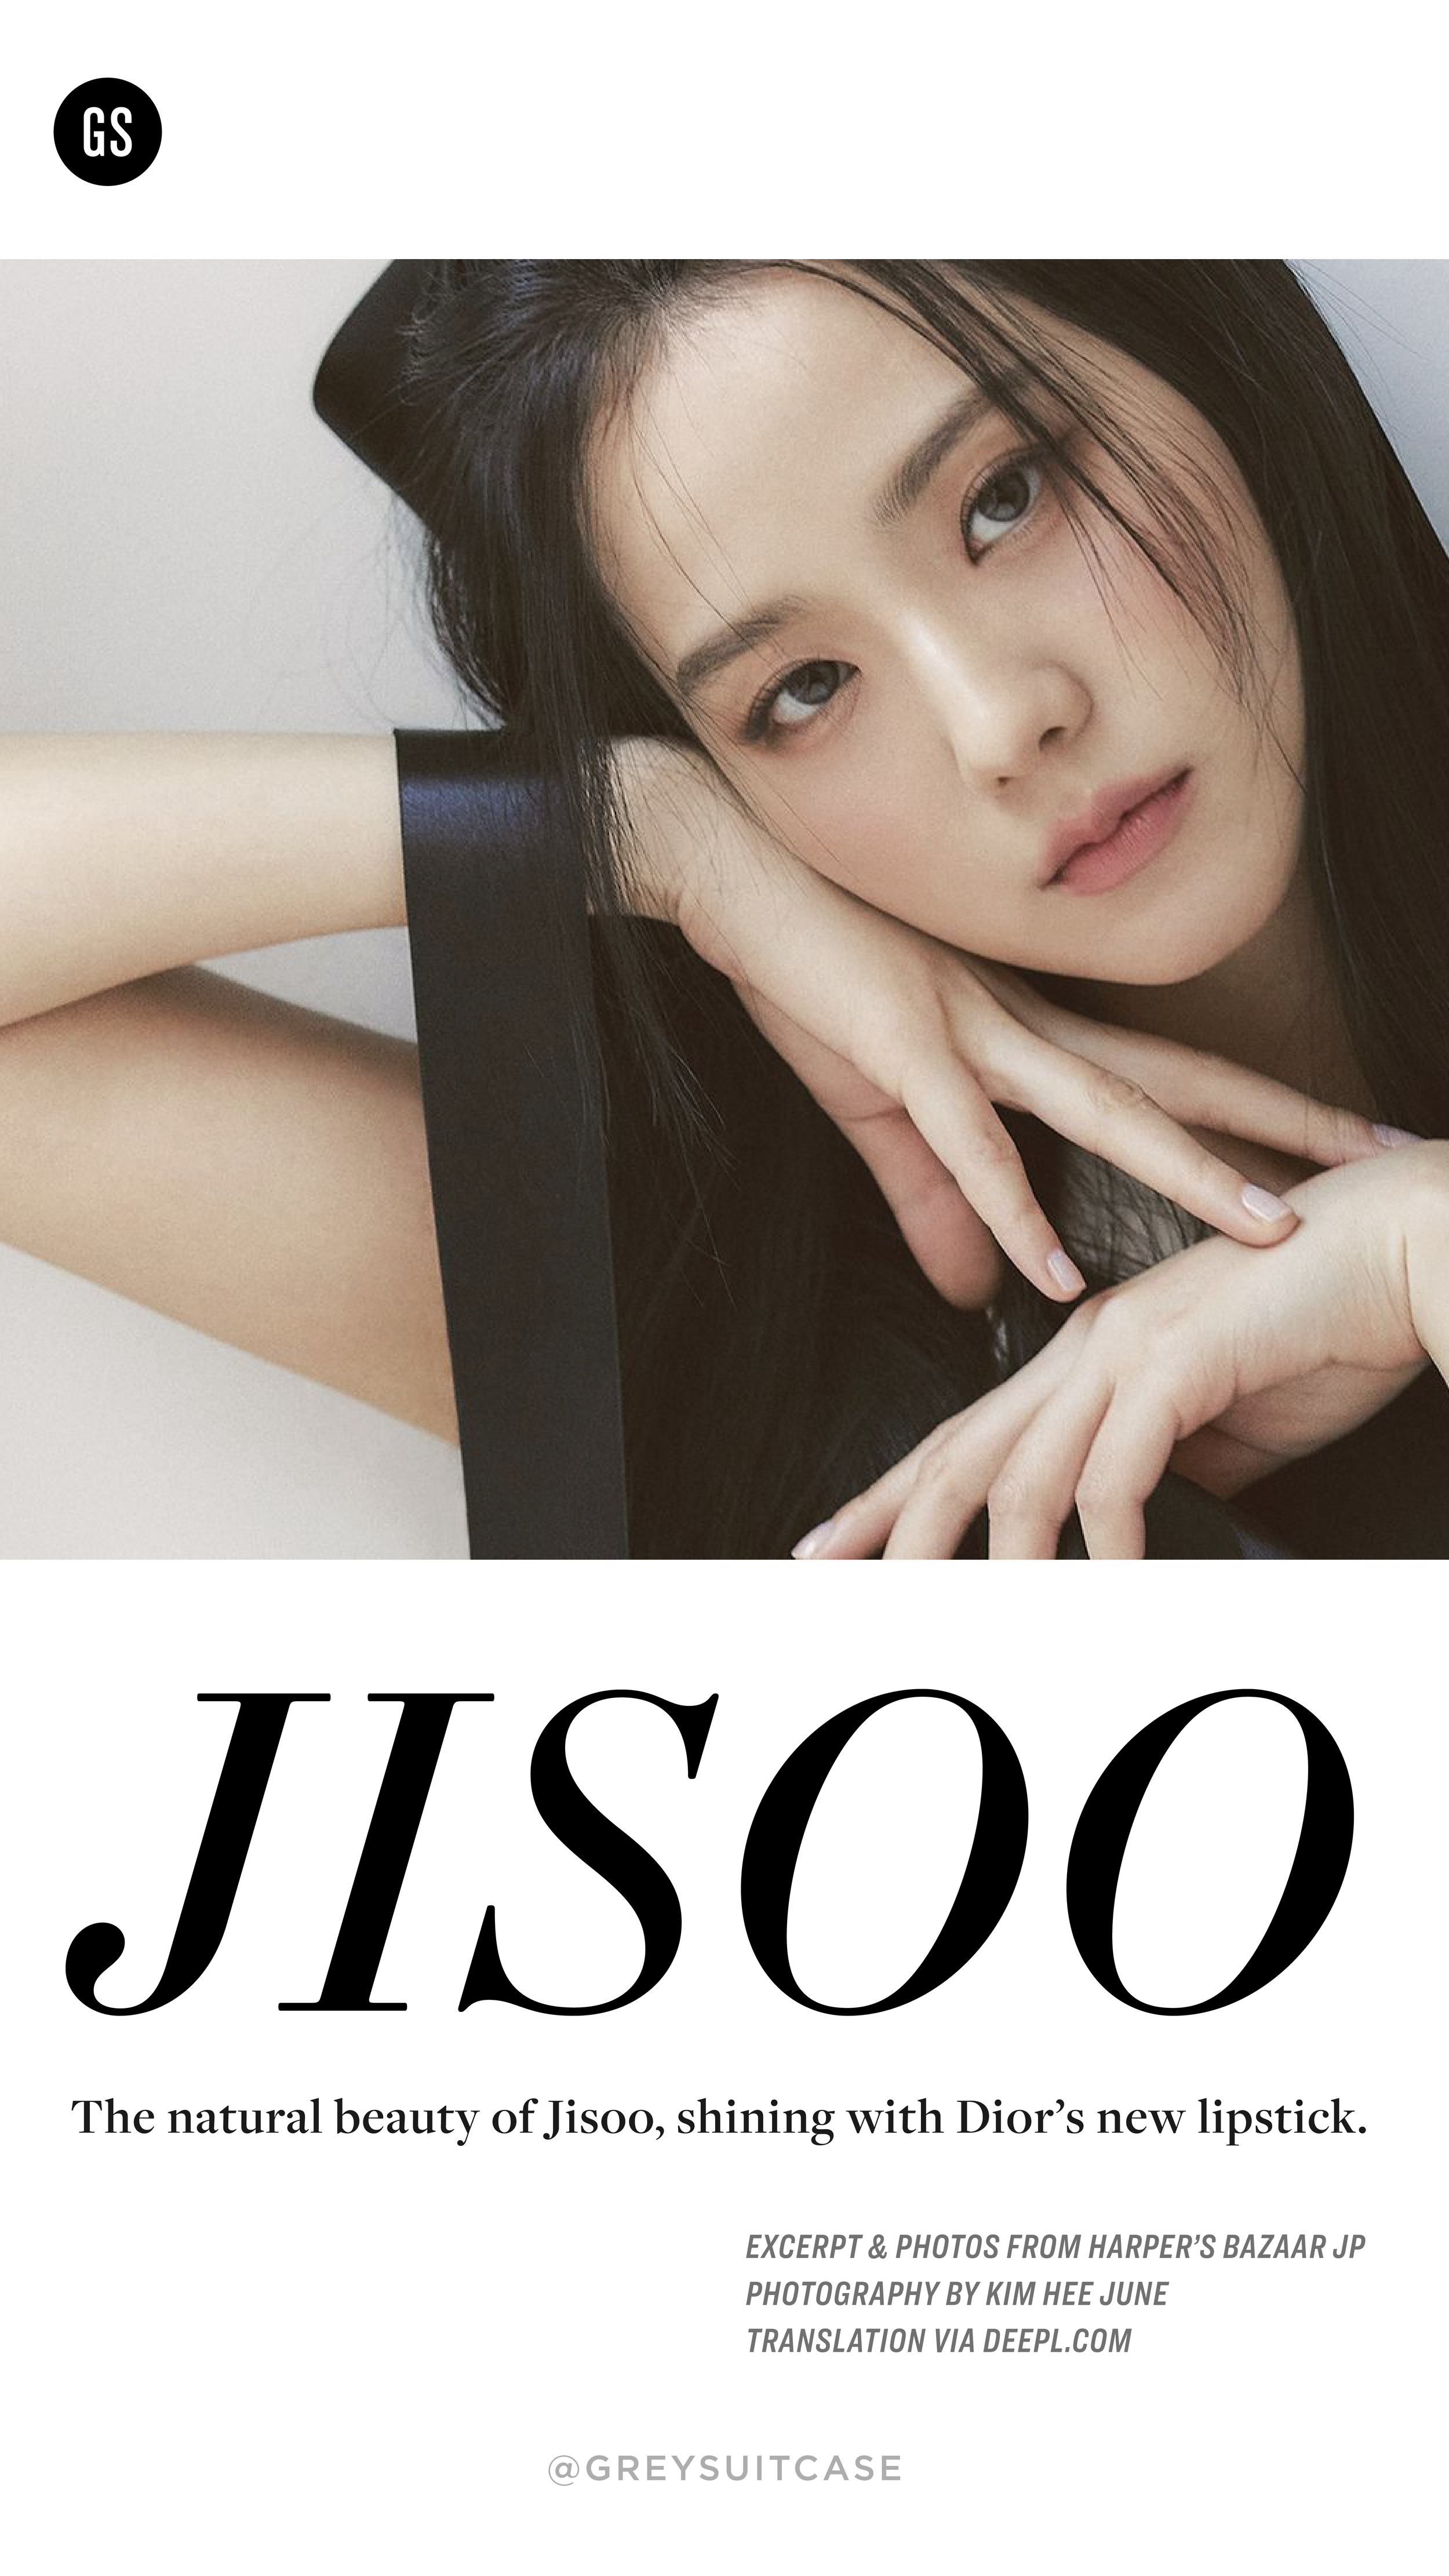 20220318 - Jisoo for Harpers Bazaar JP IG Story-01.png